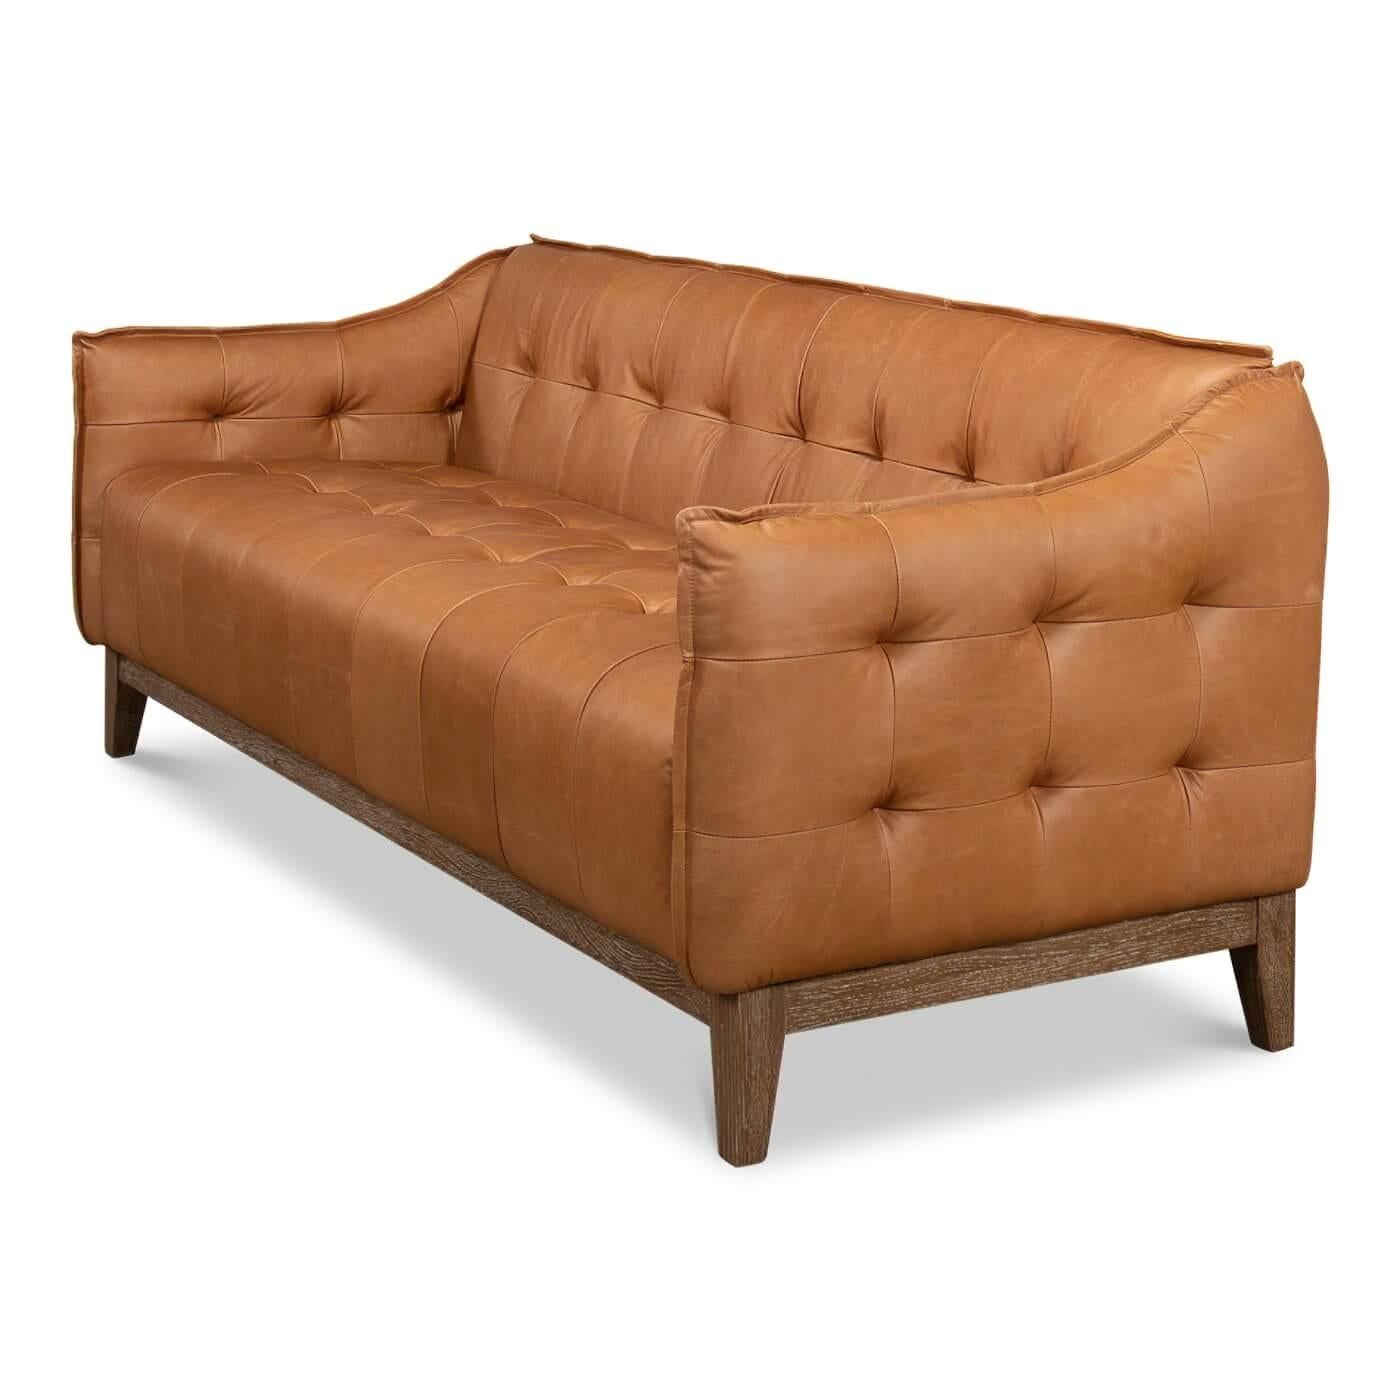 Canapé en cuir de style milieu de siècle avec une base en chêne vieilli. Ce canapé contemporain est revêtu de cuir marron traditionnel avec un intérieur et des côtés boutonnés. 

Dimensions : 77